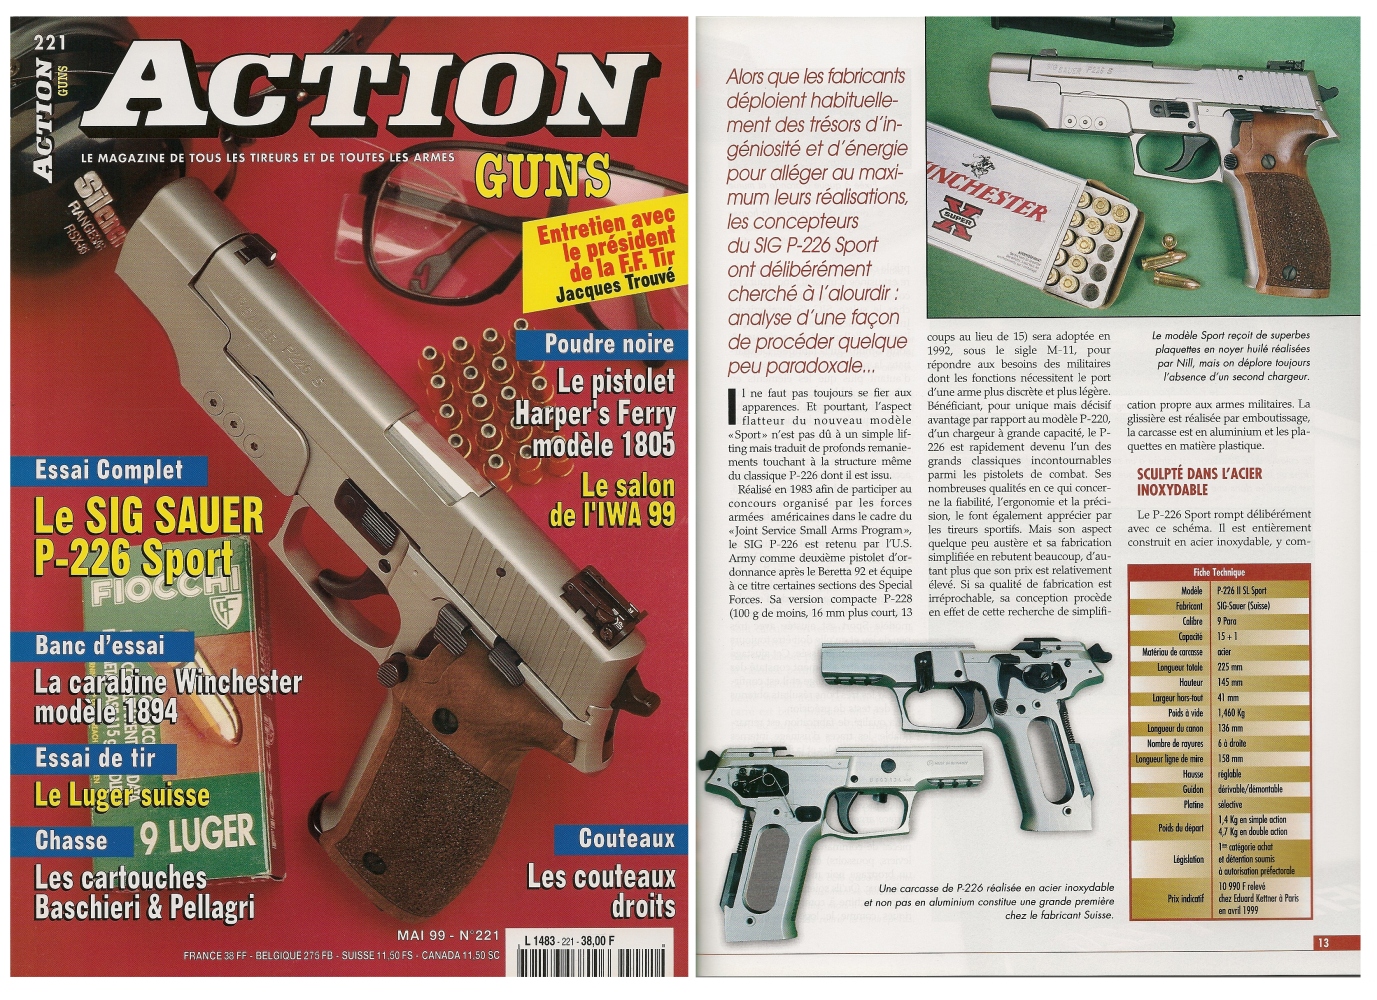 Le banc d’essai du pistolet Sig-Sauer P-226 « Sport » a été publié sur 7 pages dans le magazine Action Guns n°221 (mai 1999). 